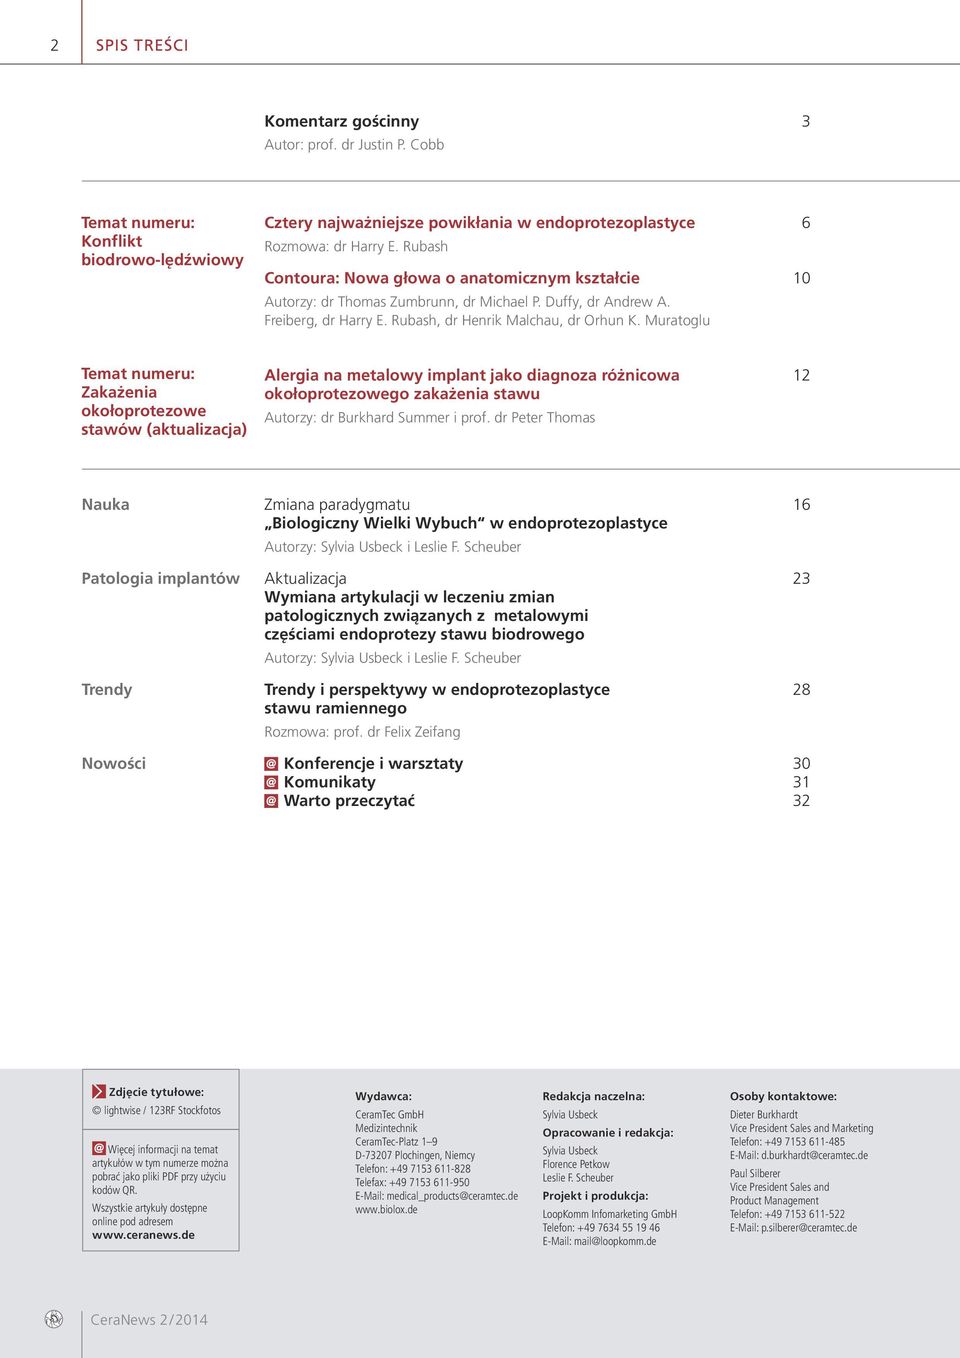 Muratoglu Temat numeru: Zakażenia okołoprotezowe stawów (aktualizacja) Alergia na metalowy implant jako diagnoza różnicowa 12 okołoprotezowego zakażenia stawu Autorzy: dr Burkhard Summer i prof.